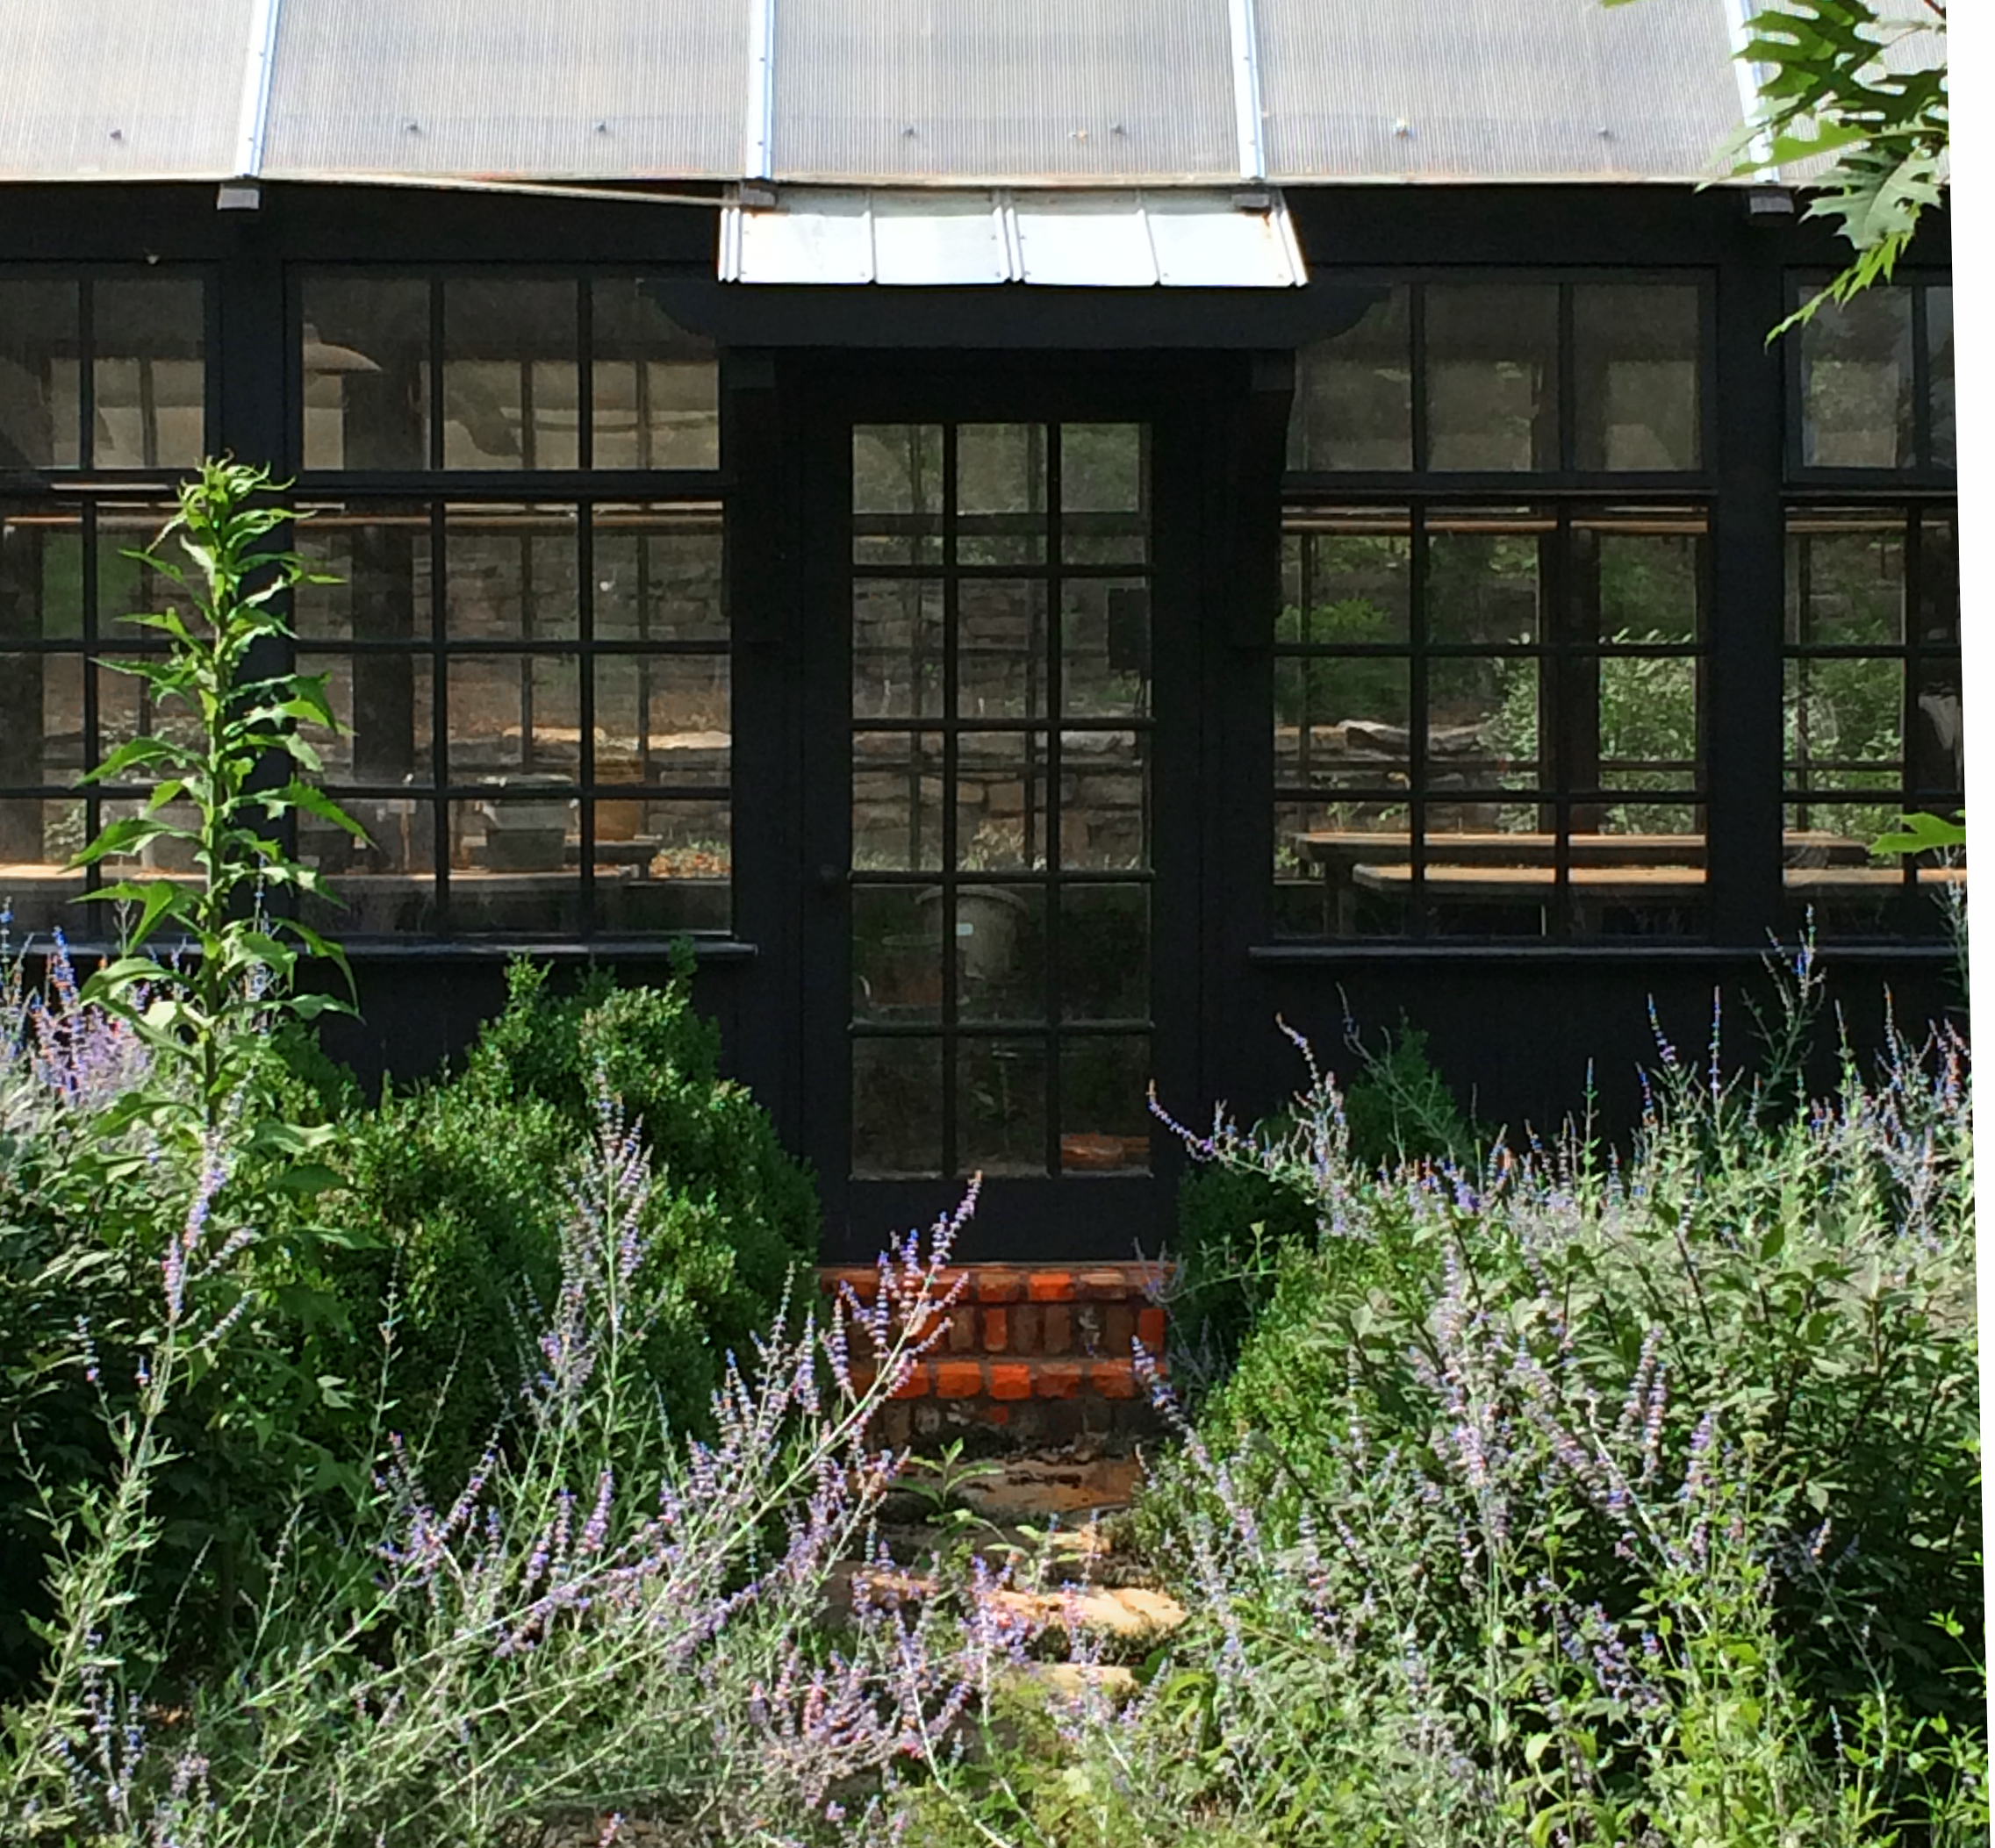 greenhouse door and green plants